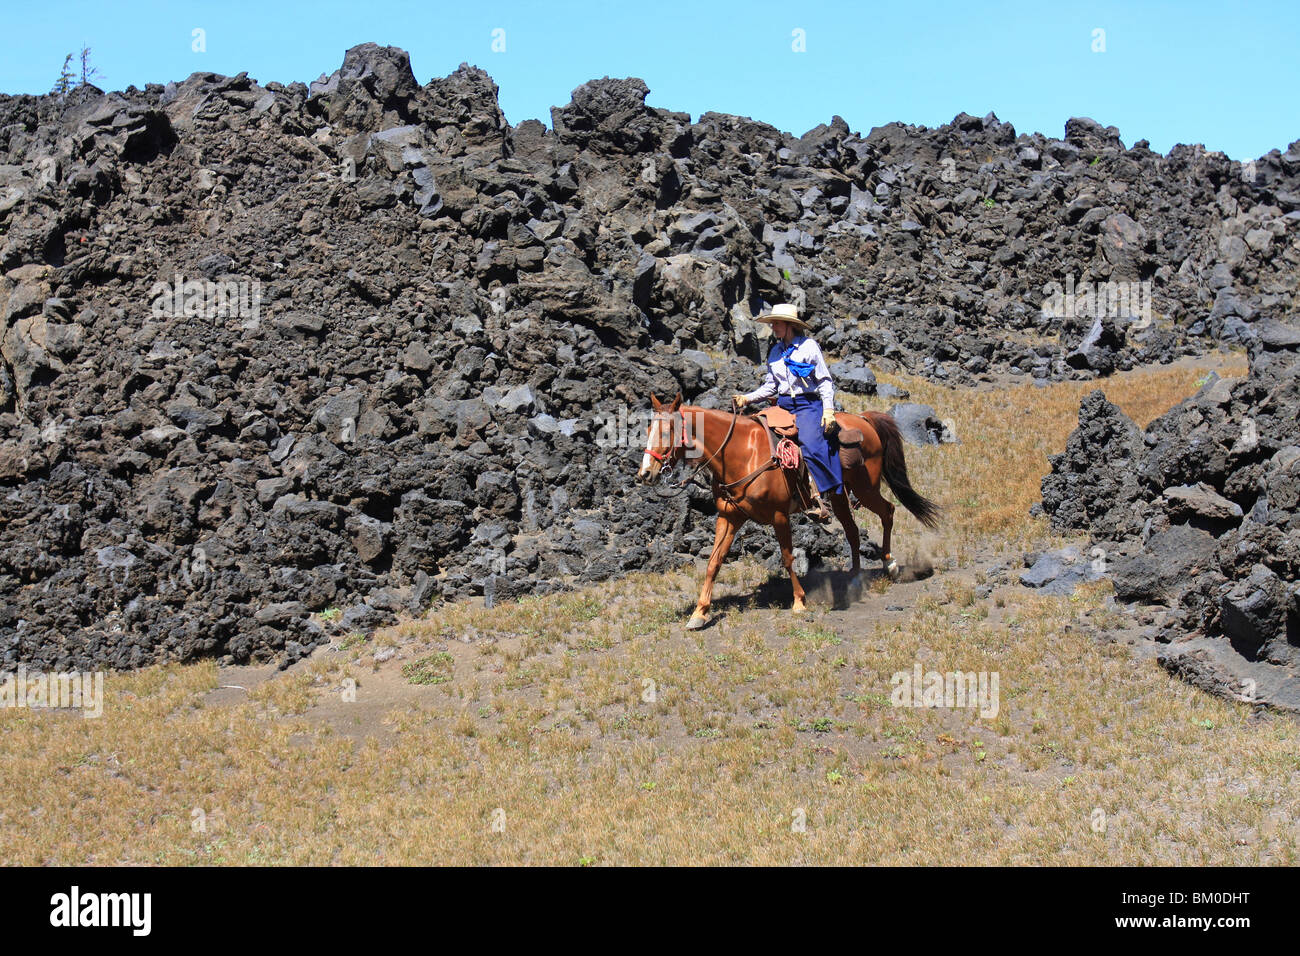 L'homme à cheval près de tas de roches, USA Banque D'Images